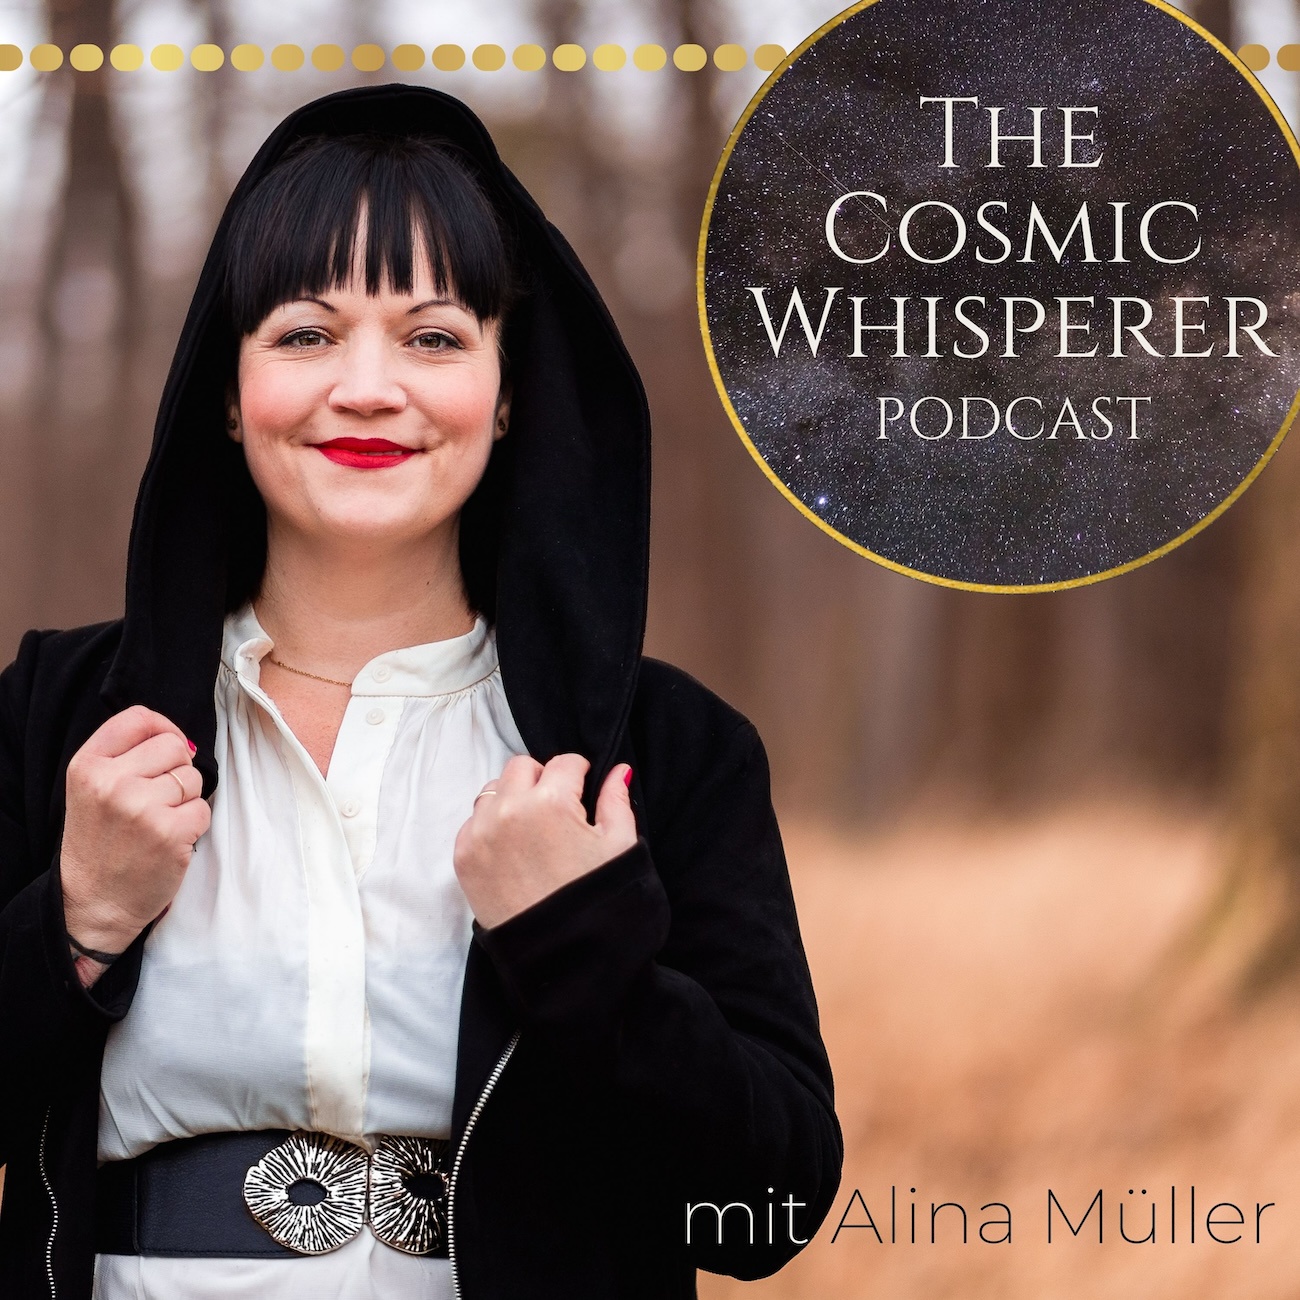 The Cosmic Whisperer Podcast